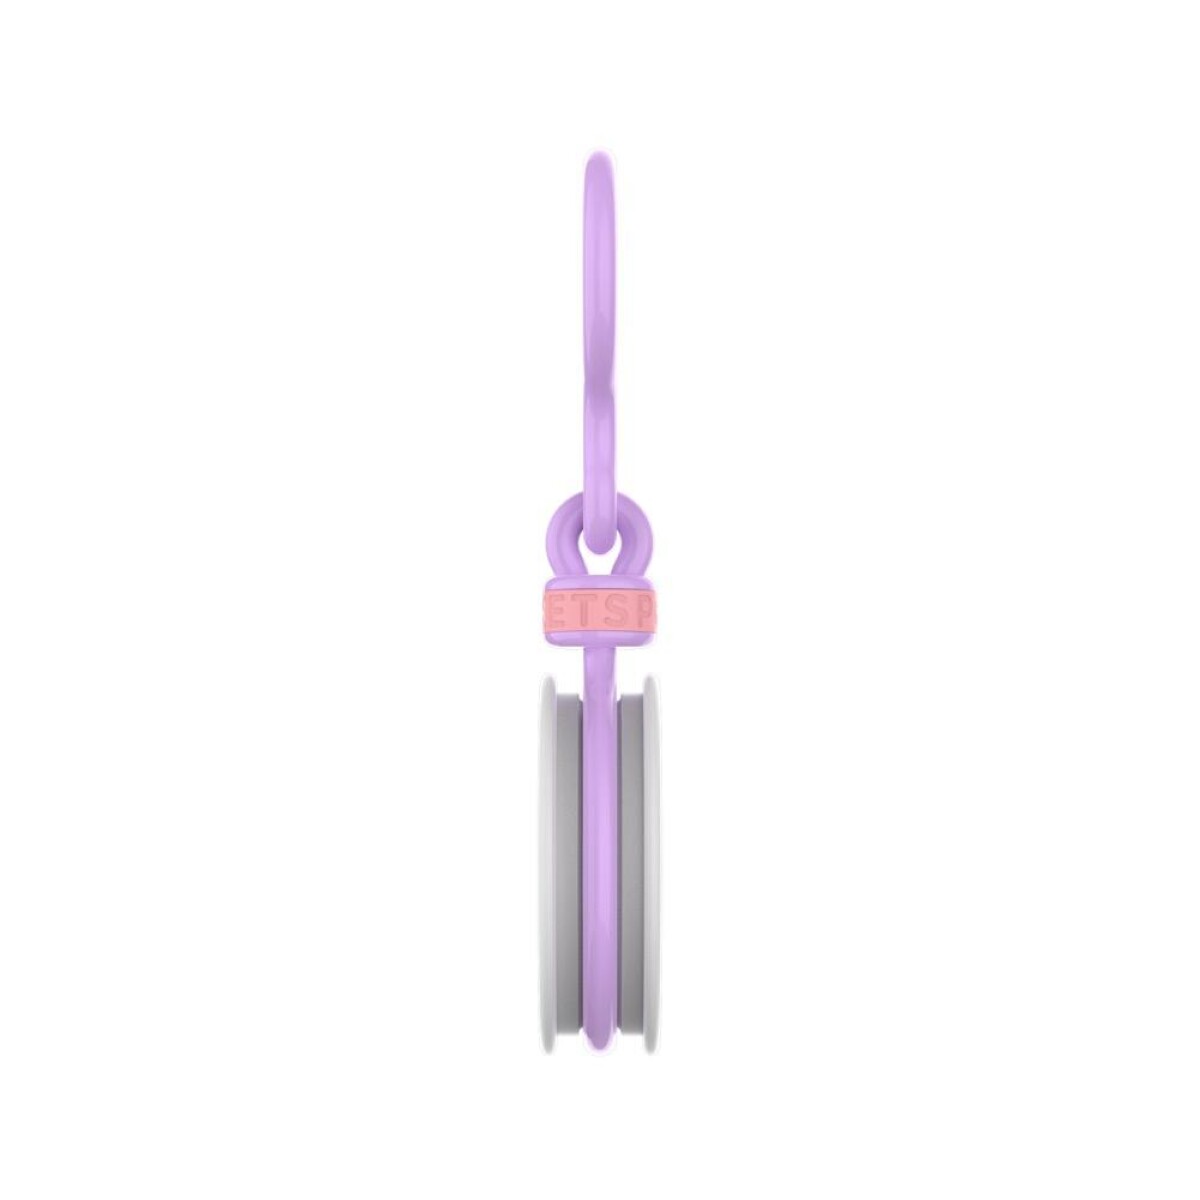 Popchain popsocket - Popchain violeta iris 